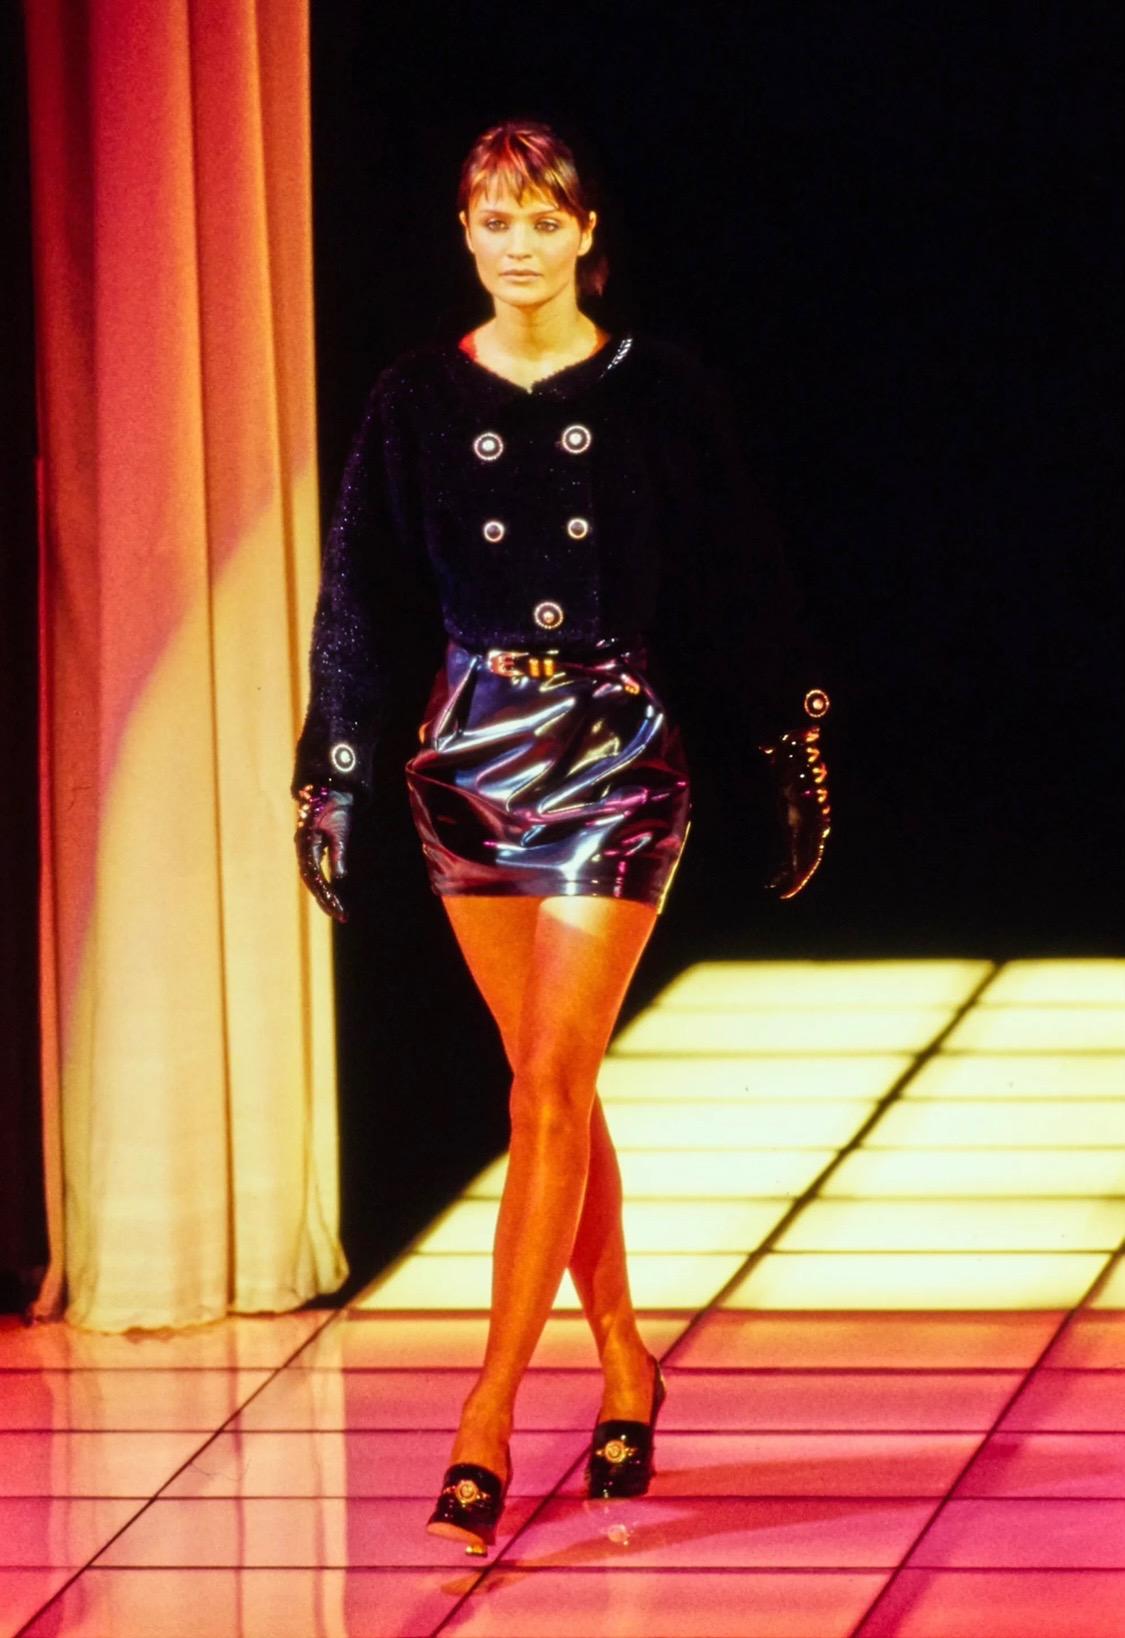 Voici une paire d'escarpins Gianni Versace en fausse peau de serpent noire, créée par Gianni Versace. Datant de l'automne-hiver 1994, ces escarpins de style mocassin sont ornés de médaillons Versace Medusa dorés sur l'empeigne. De multiples versions